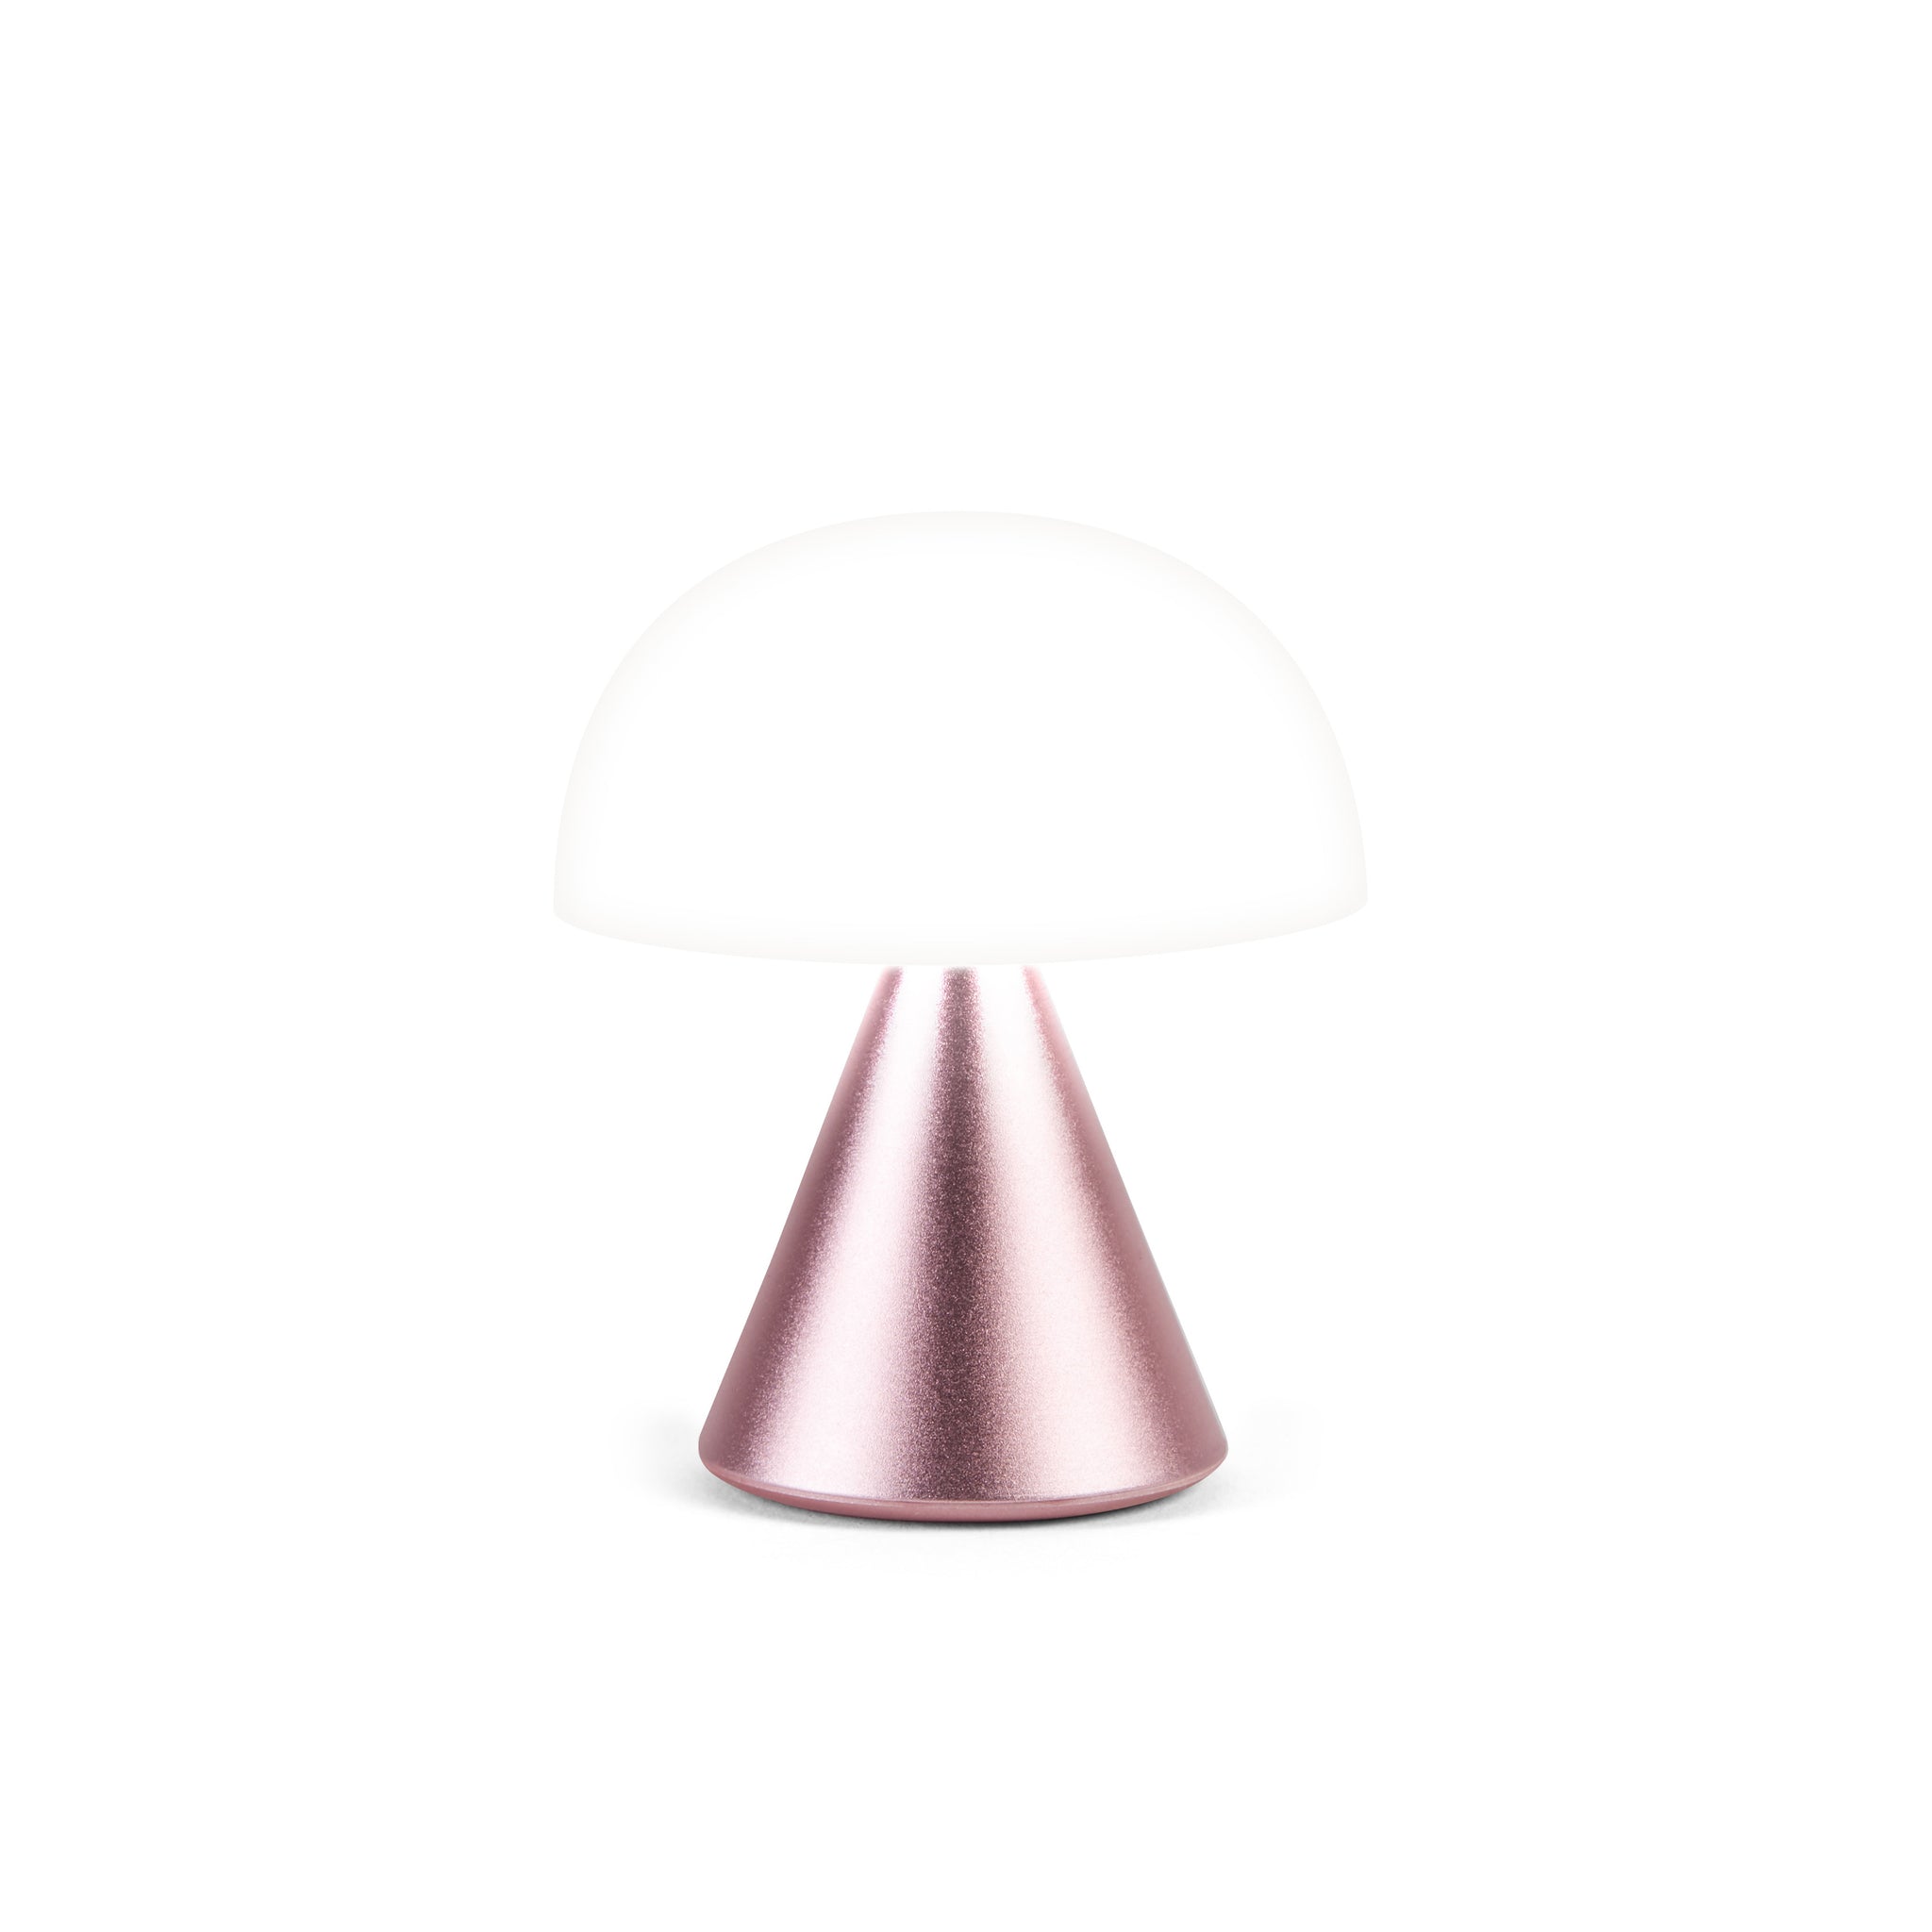 Lexon Mina Small Roze│Oplaadbare LED lamp│art. LH60MLP│vooraanzijde met wit licht aan